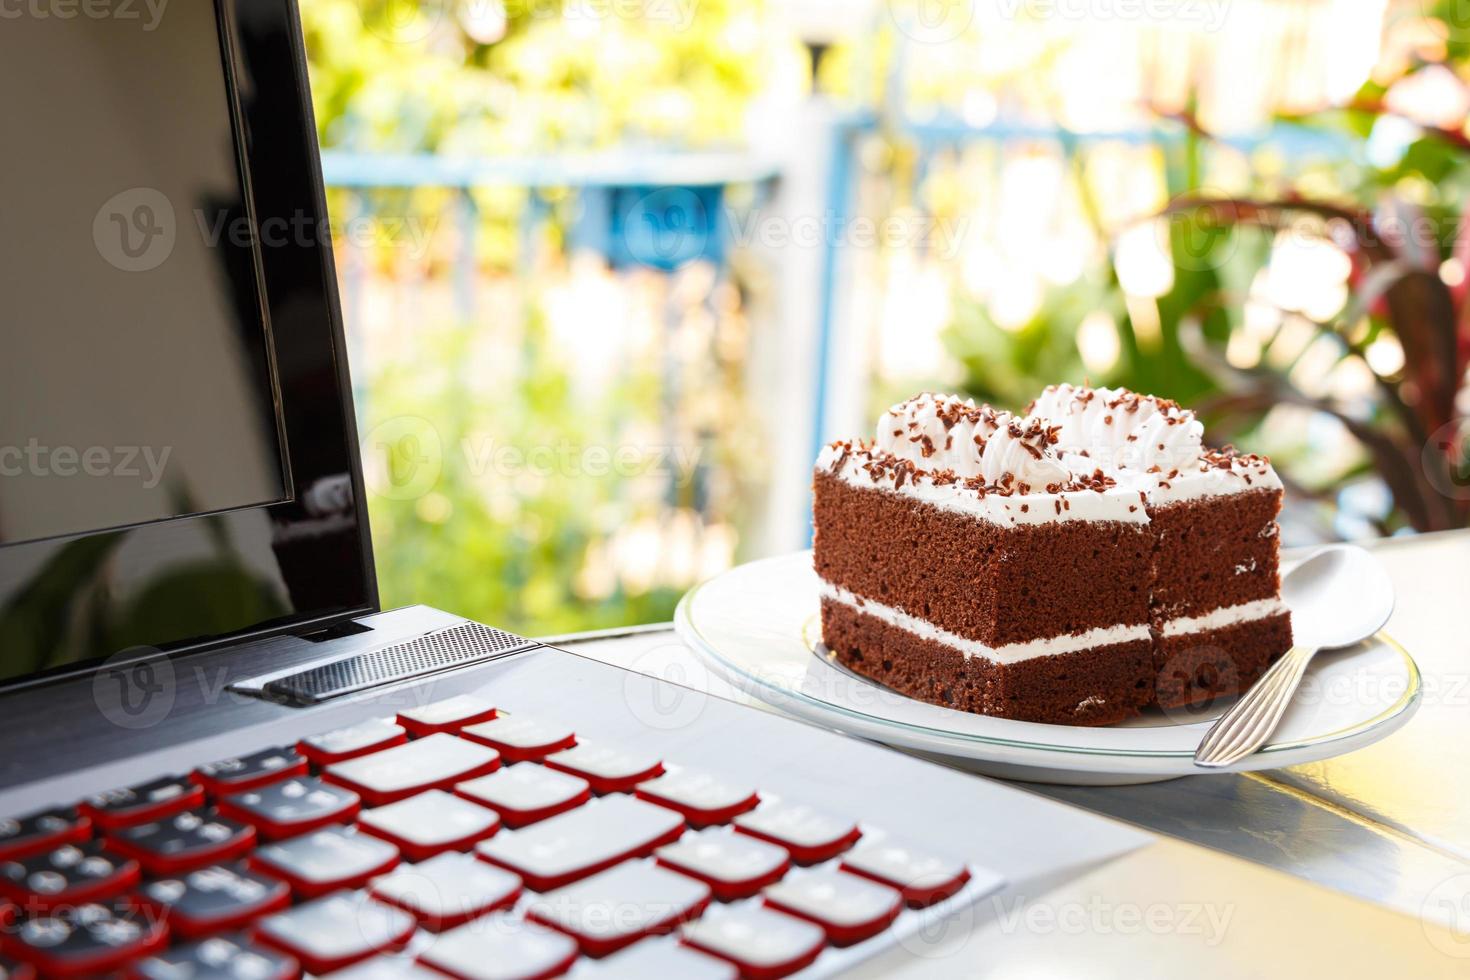 torte al cioccolato con crema bianca sulla parte superiore e computer portatile in casa foto